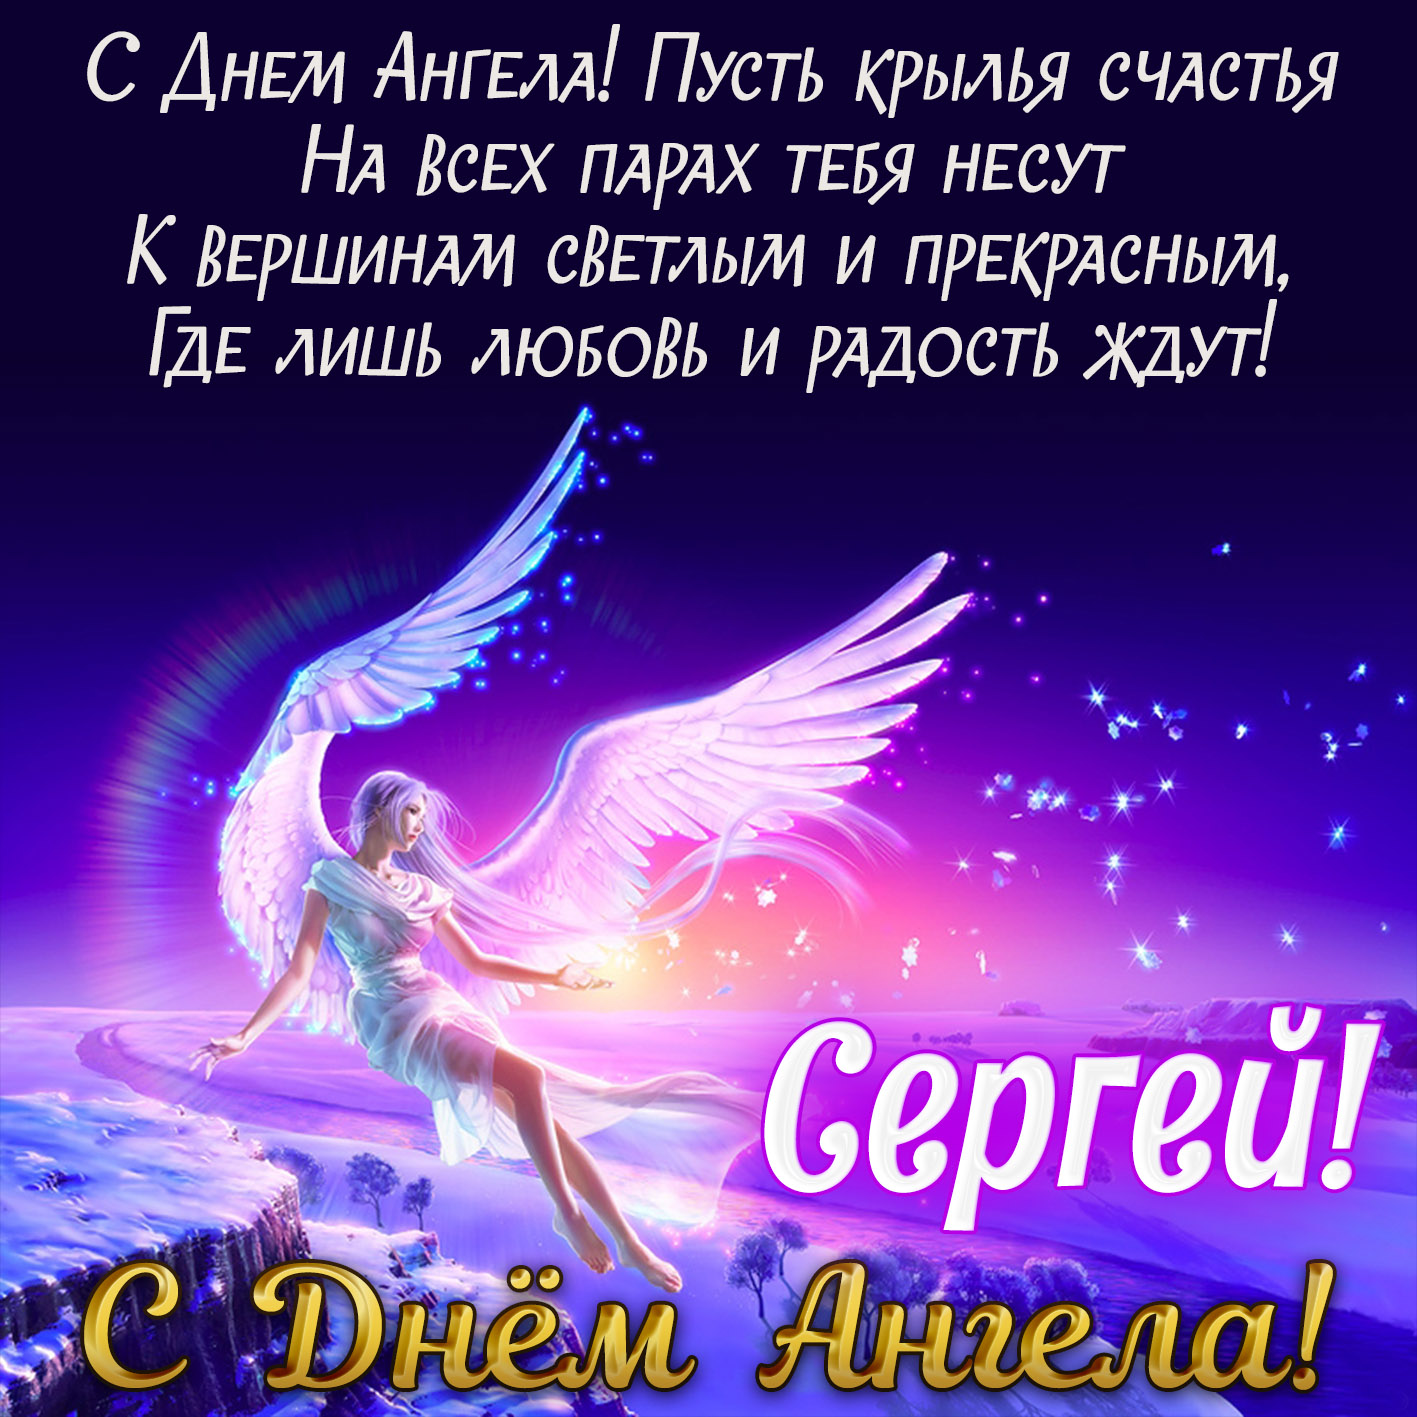 Сергей, с Днем Ангела! открытка